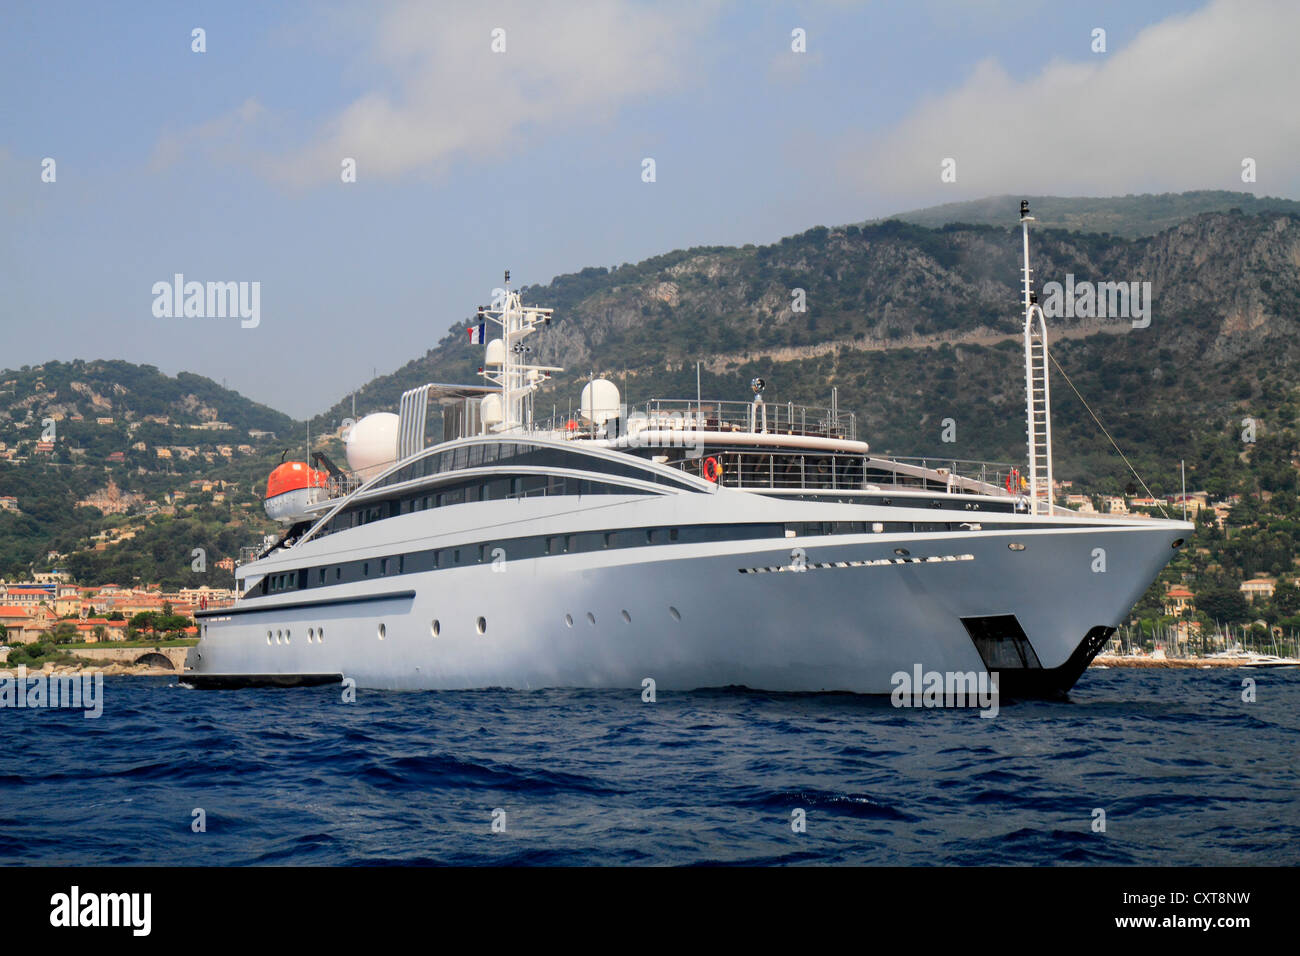 RM Elegant, un croiseur construit par Kanellos Bros, longueur : 72,48 mètres, construit en 2005, Cap Ferrat, Côte d'Azur, France Banque D'Images